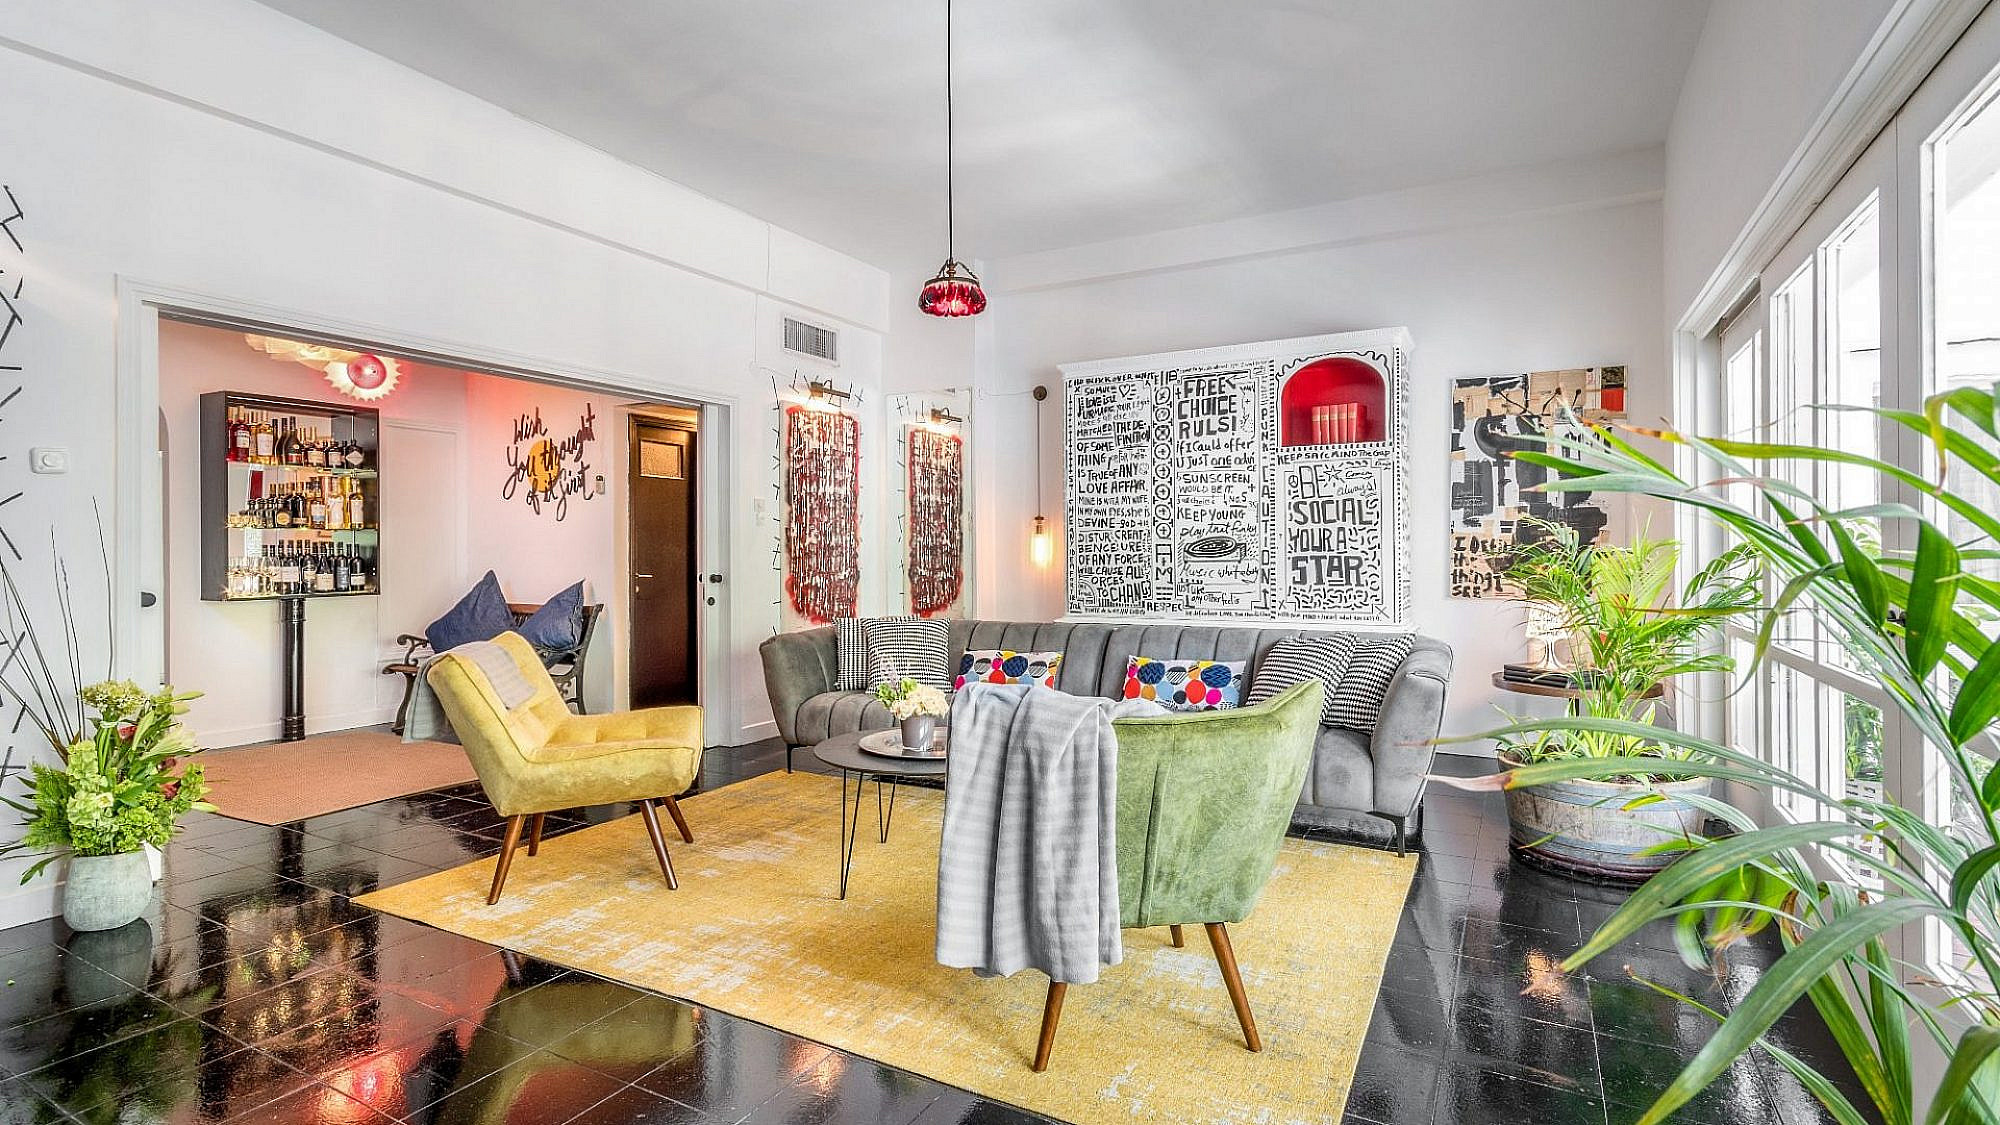 דירת Airbnb בתל אביב | עיצוב וארט: יגיל וילר, צילום: עידן גיל